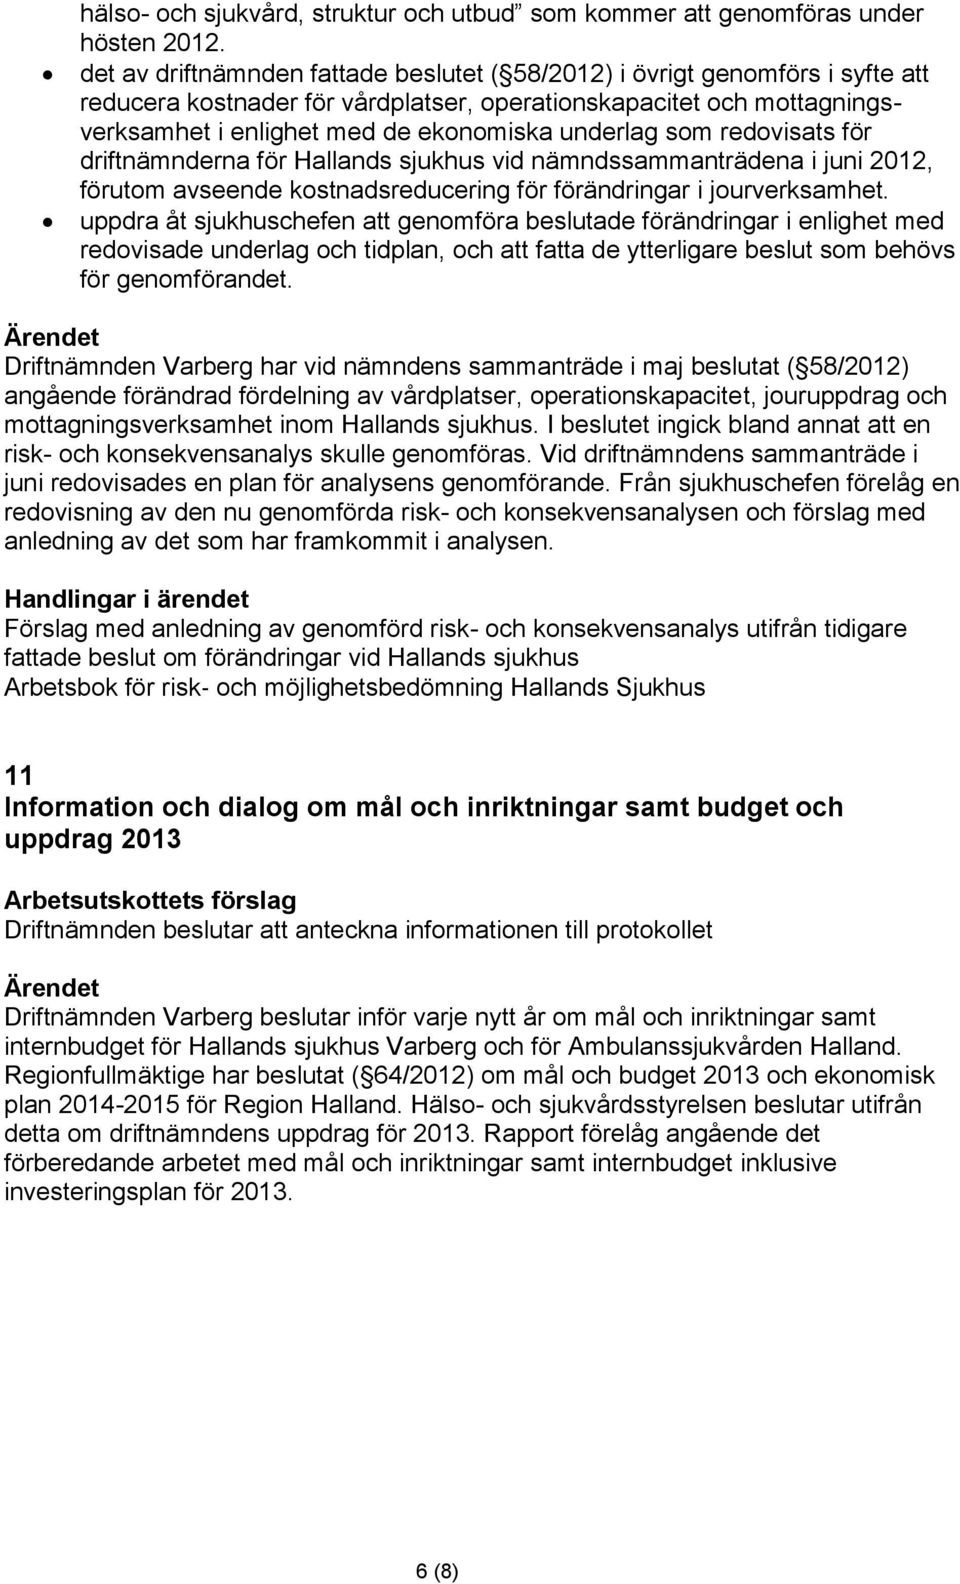 som redovisats för driftnämnderna för Hallands sjukhus vid nämndssammanträdena i juni 2012, förutom avseende kostnadsreducering för förändringar i jourverksamhet.